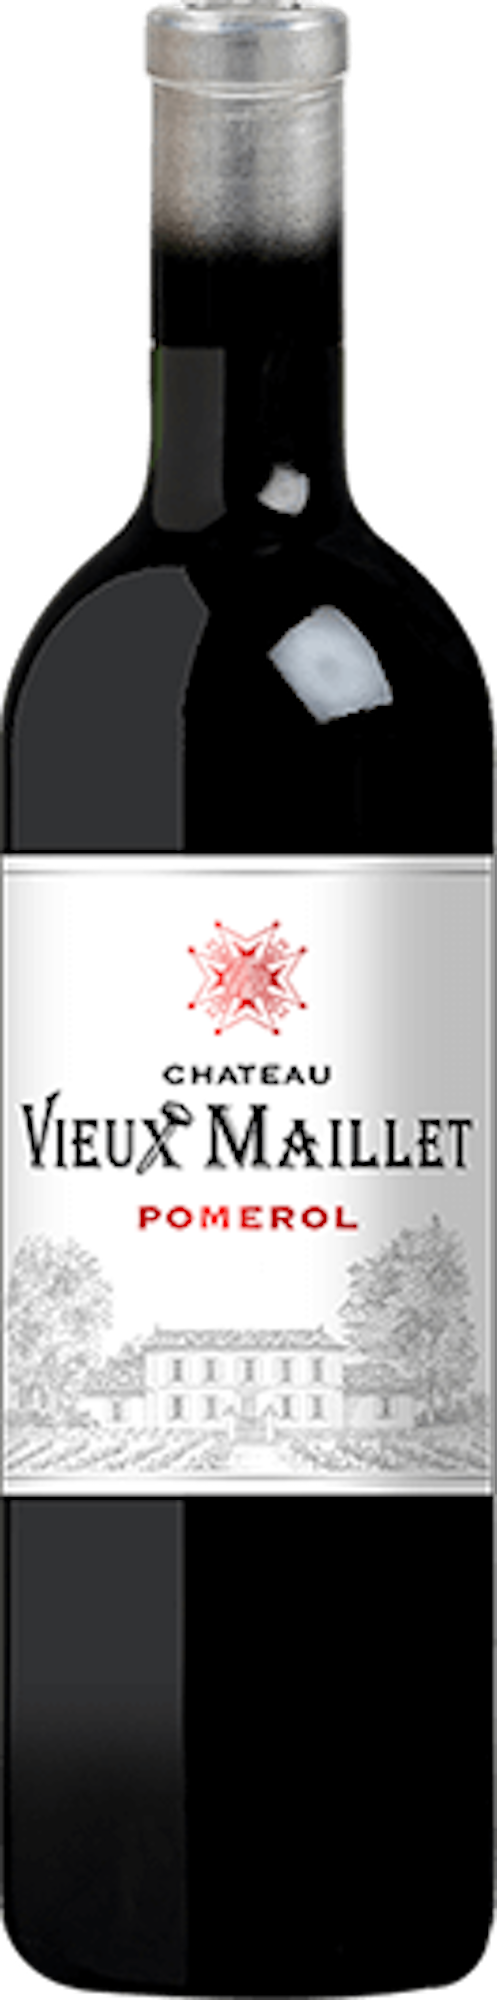 Chateau Vieux Maillet Pomerol 2019